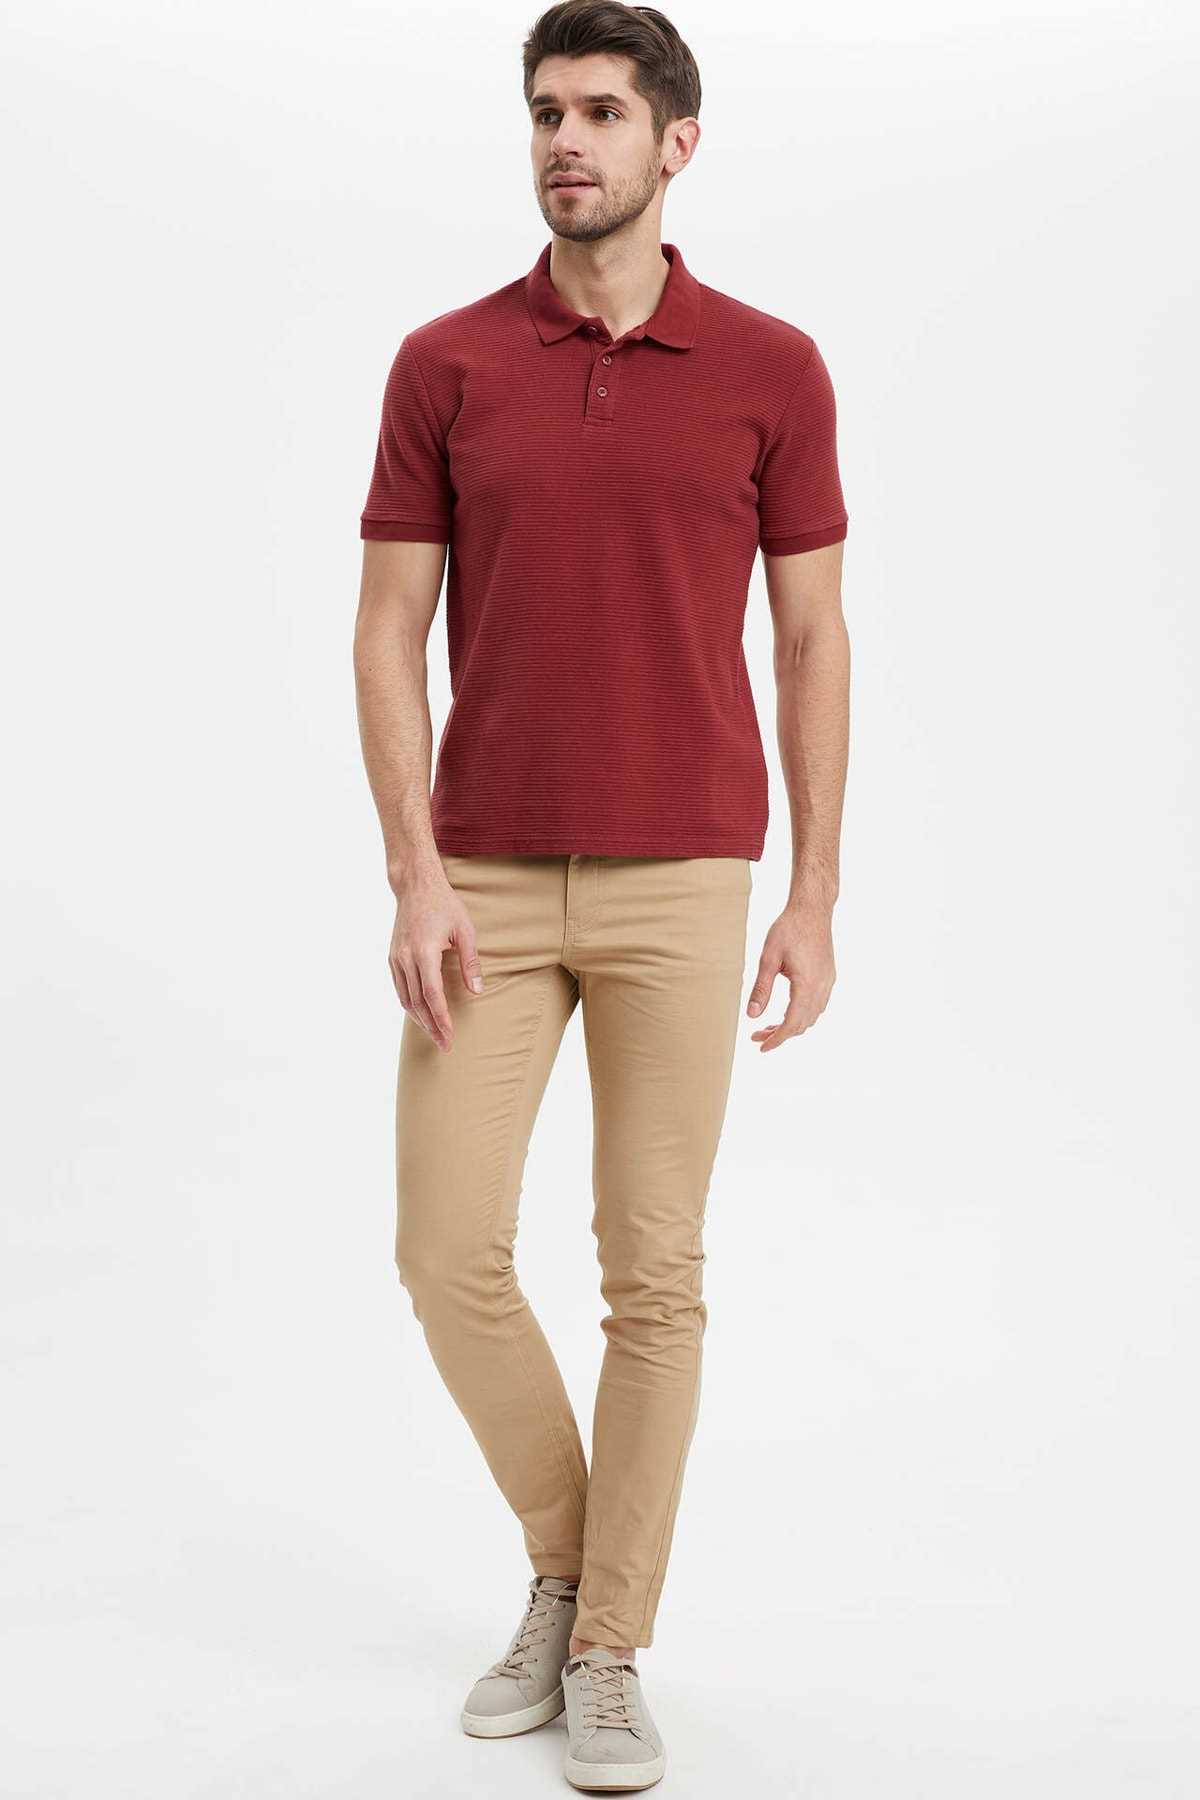 خرید انلاین تی شرت مردانه خاص برند دفاکتو ترکیه رنگ زرشکی ty36431780